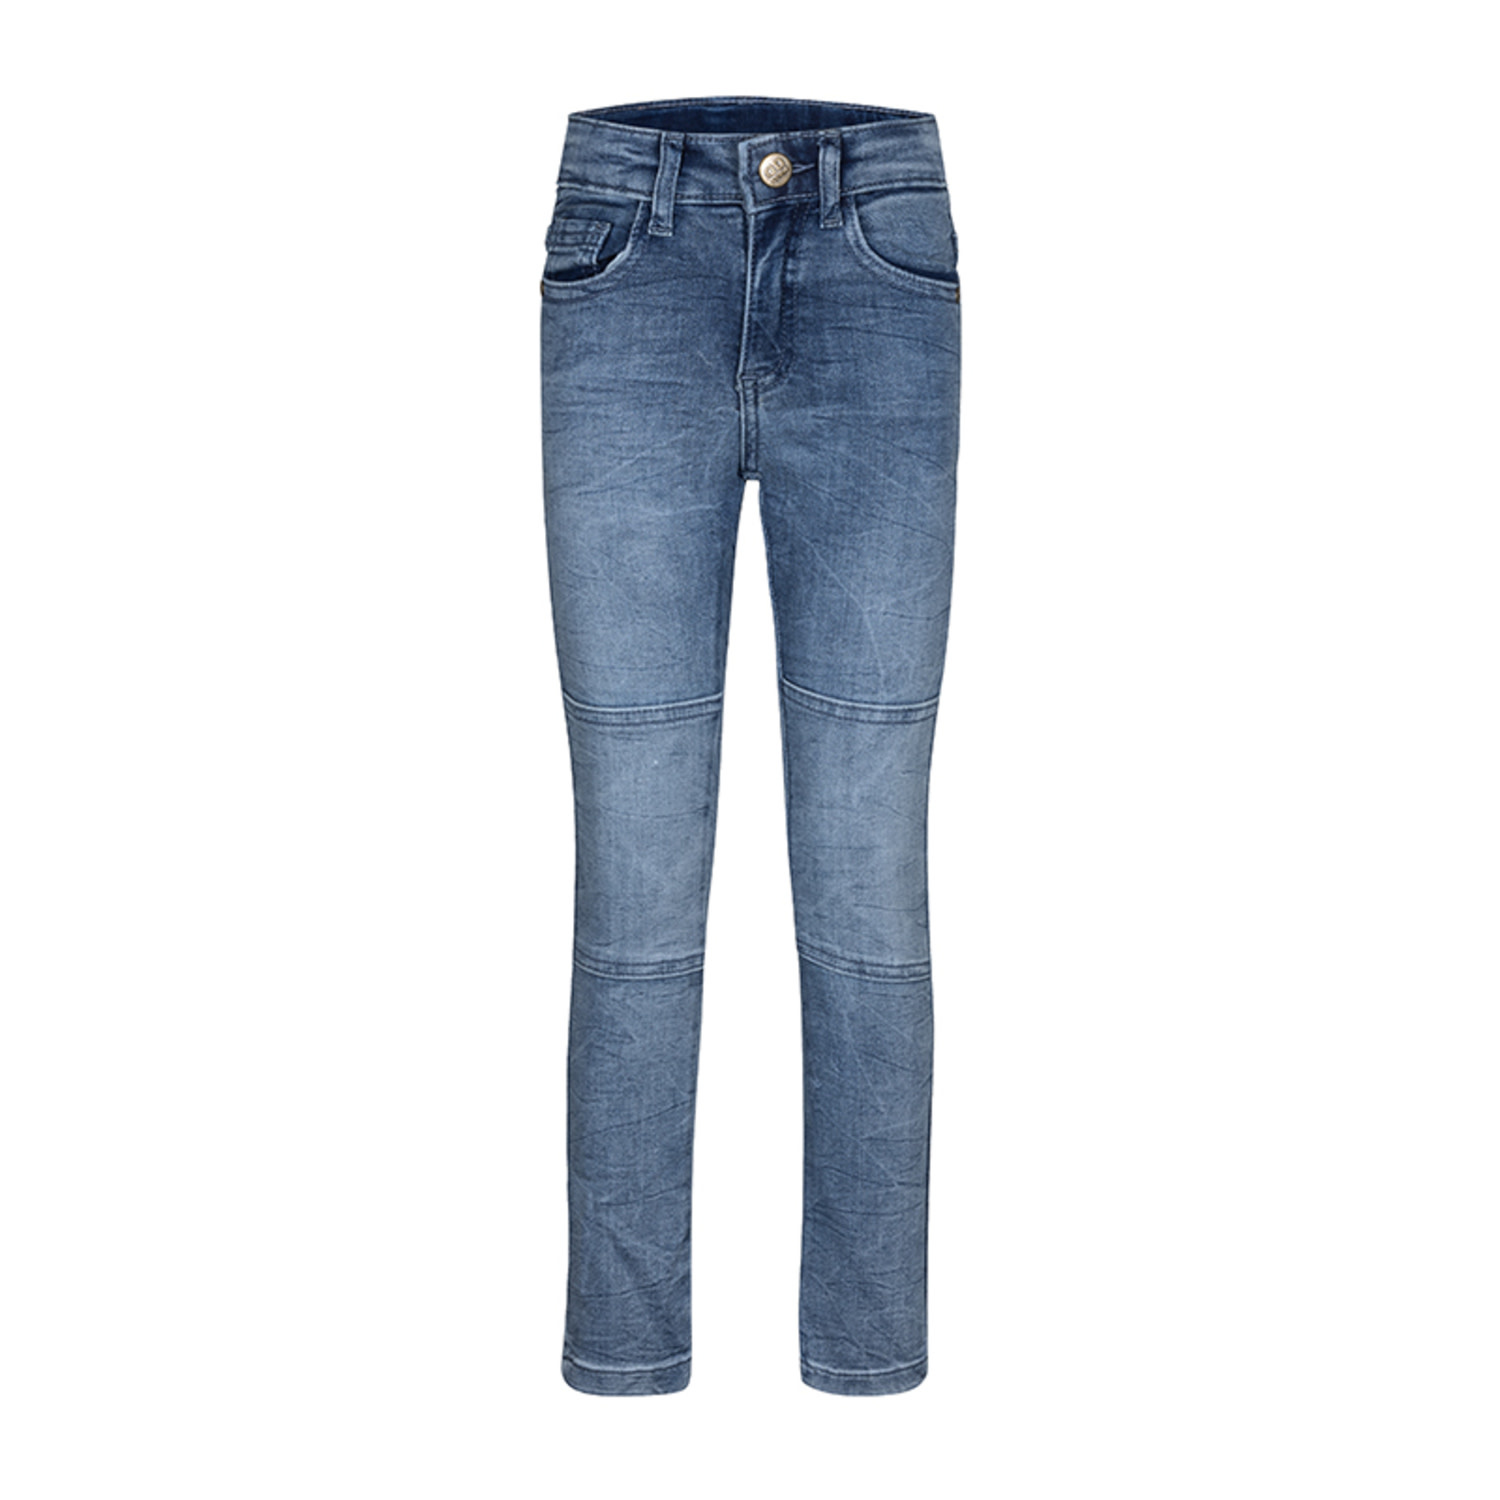 Afbeelding van Dutch Dream Denim Jongens jeans extra slim fit fedha